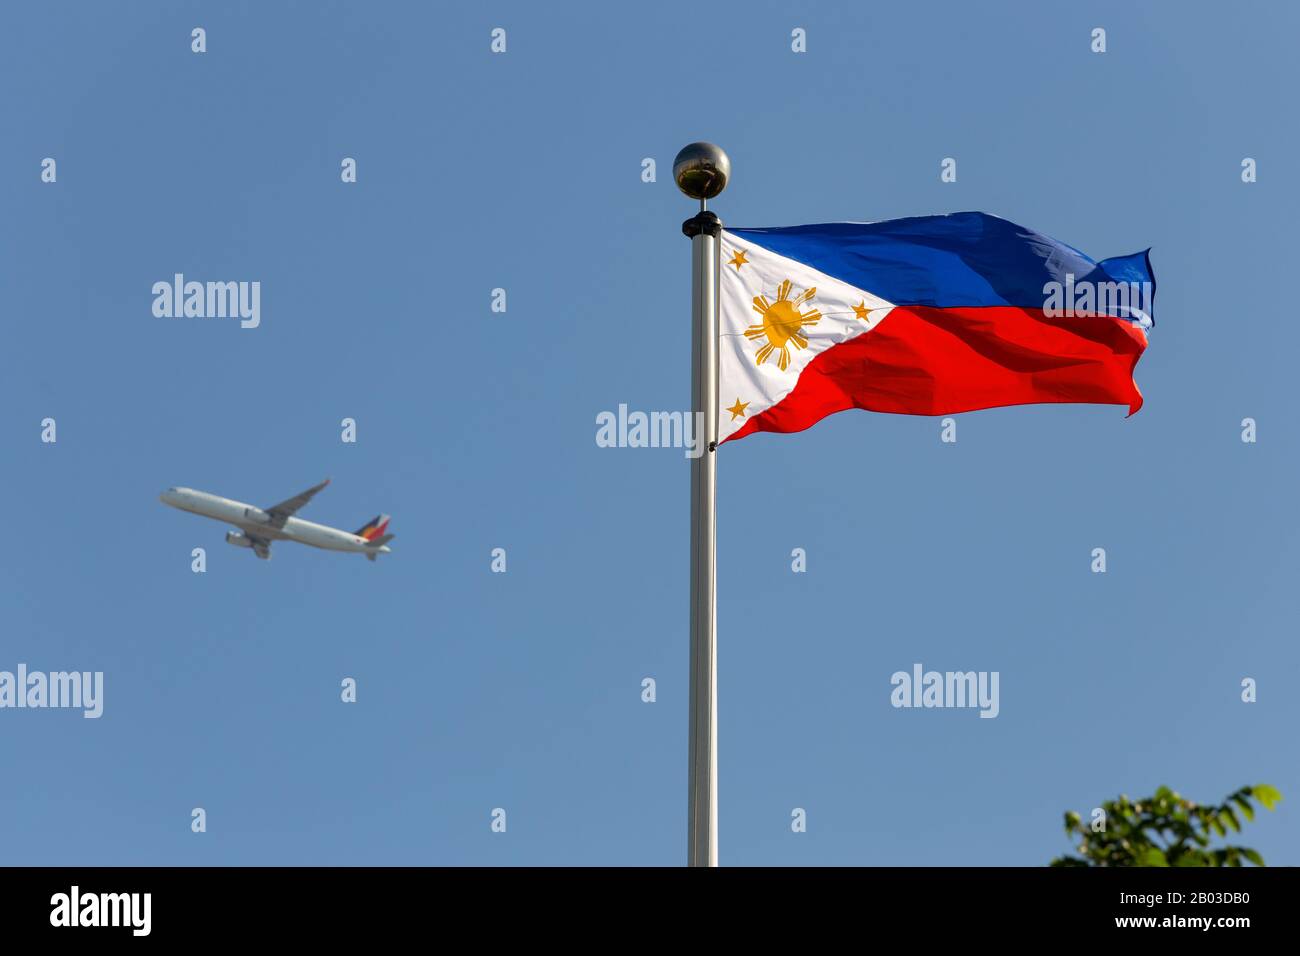 Imagen de una bandera de Filipinas y un avión de fondo Foto de stock